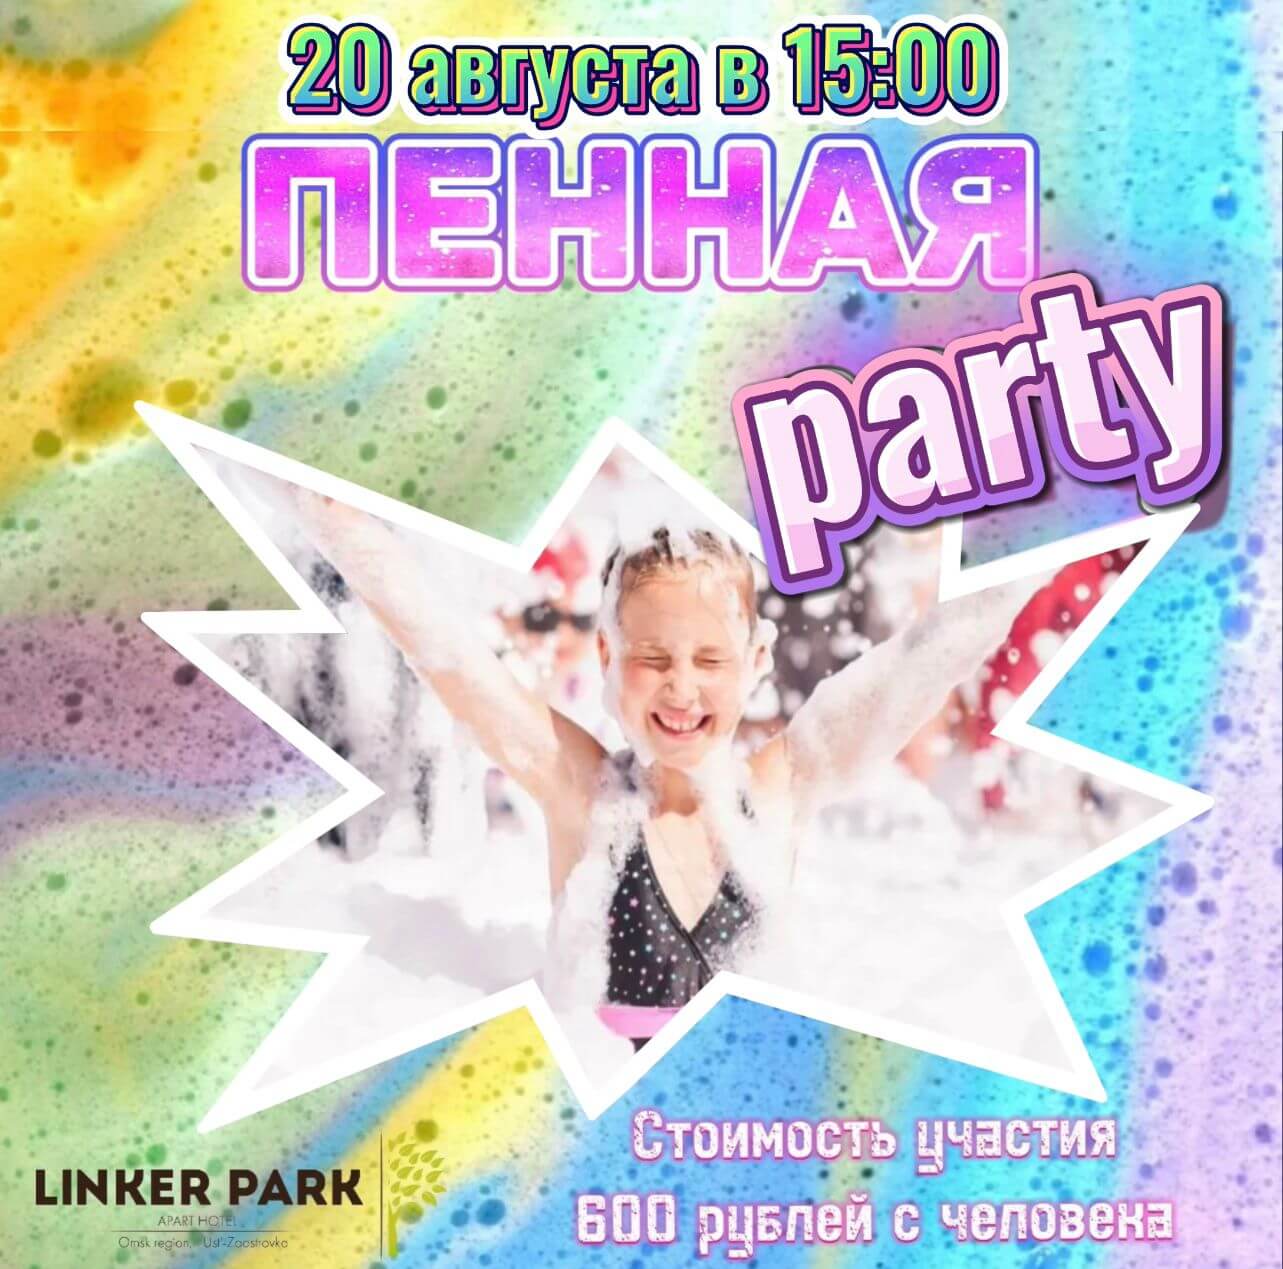 Традиционный летний праздник Пенная вечеринка пройдет в Линкер Парк 20 августа 2023 года в 15 часов